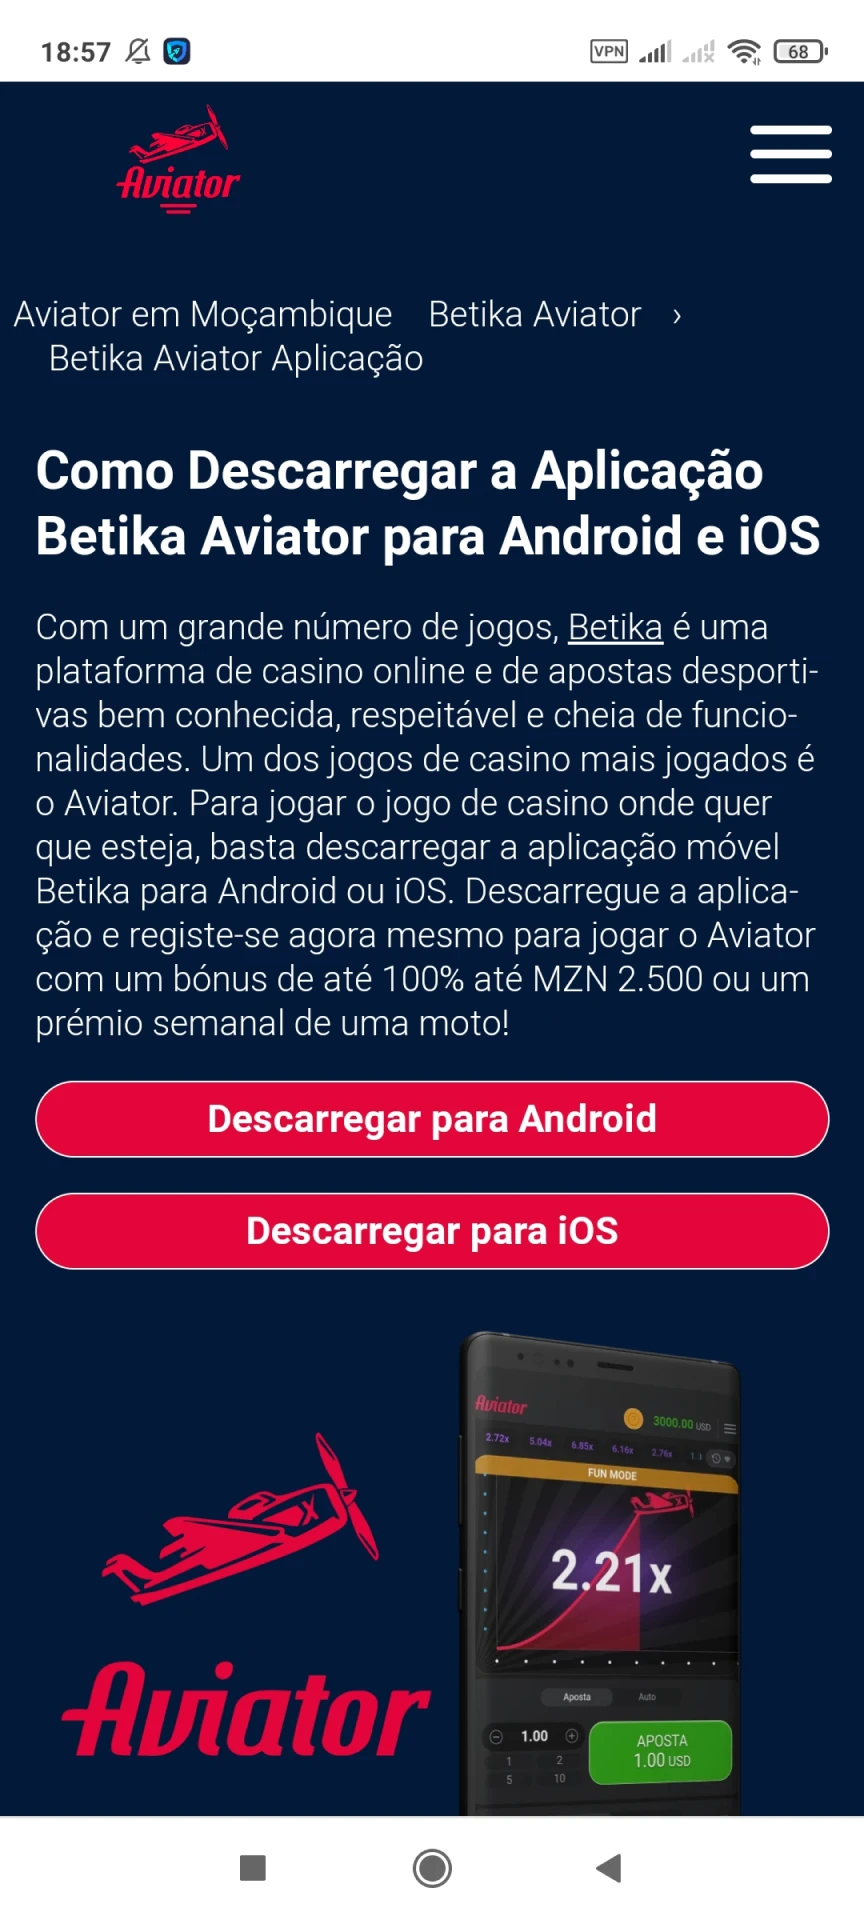 Visite a página inicial da Betika para baixar o aplicativo Android.